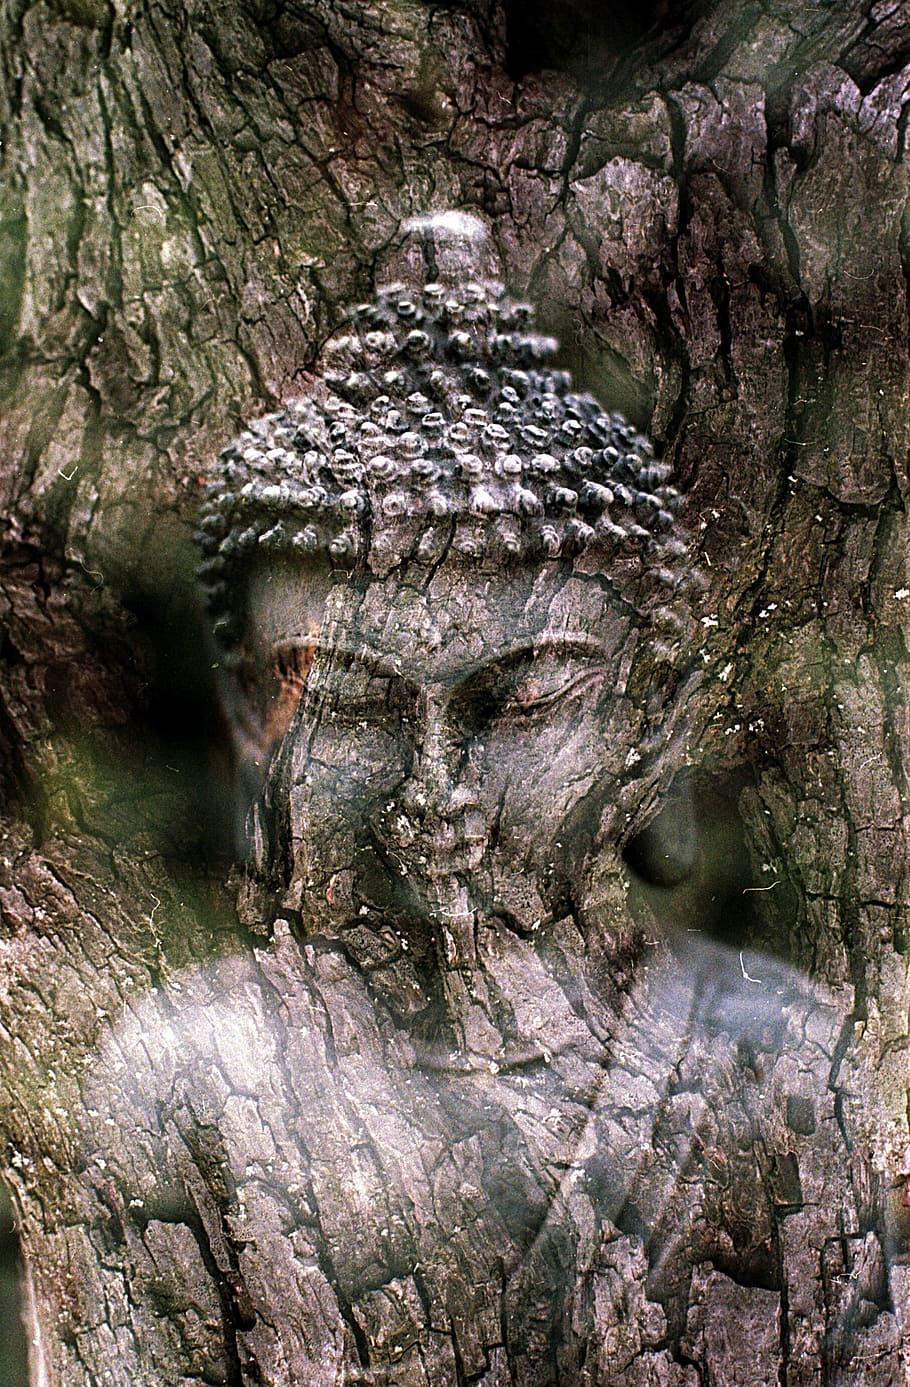 foto, Gautama Buda tronco de árvore, Buda, meditação, estátua, religião, espiritual, budismo, religioso, budista